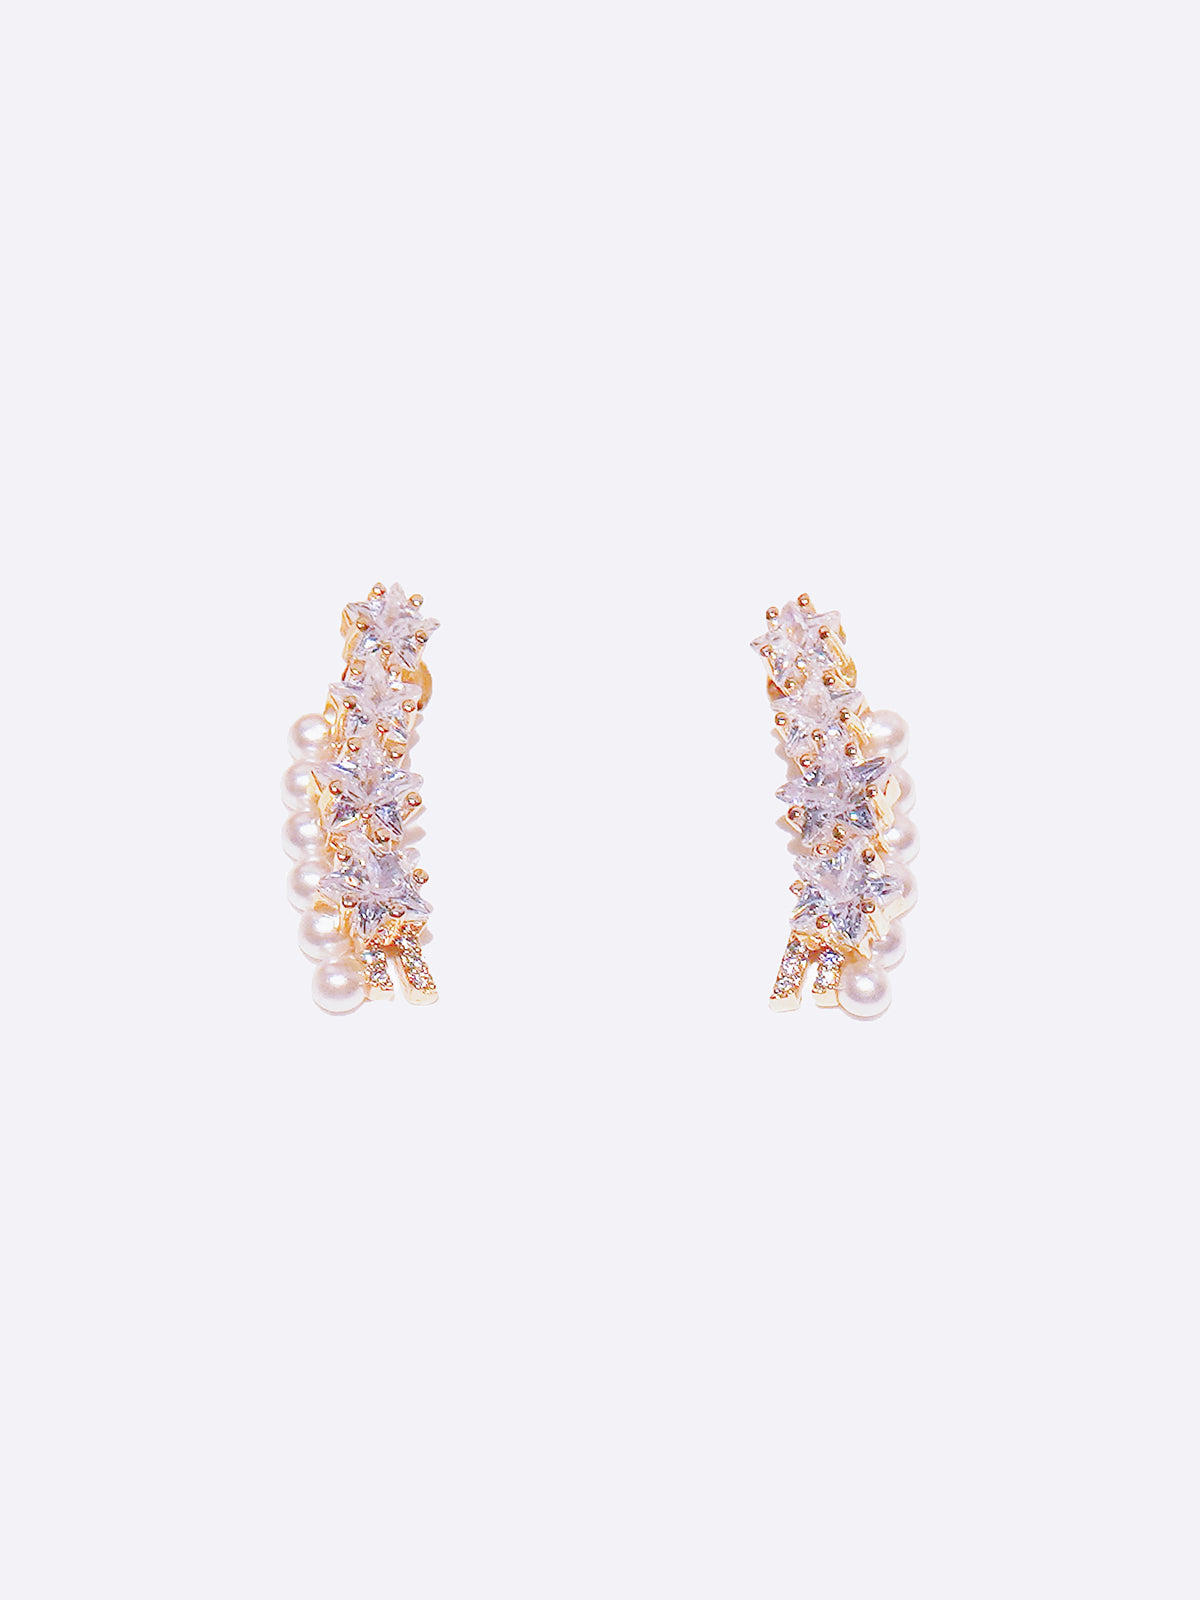 LAFIT · Starry Night - Earrings 高貴立體閃鑽耳環